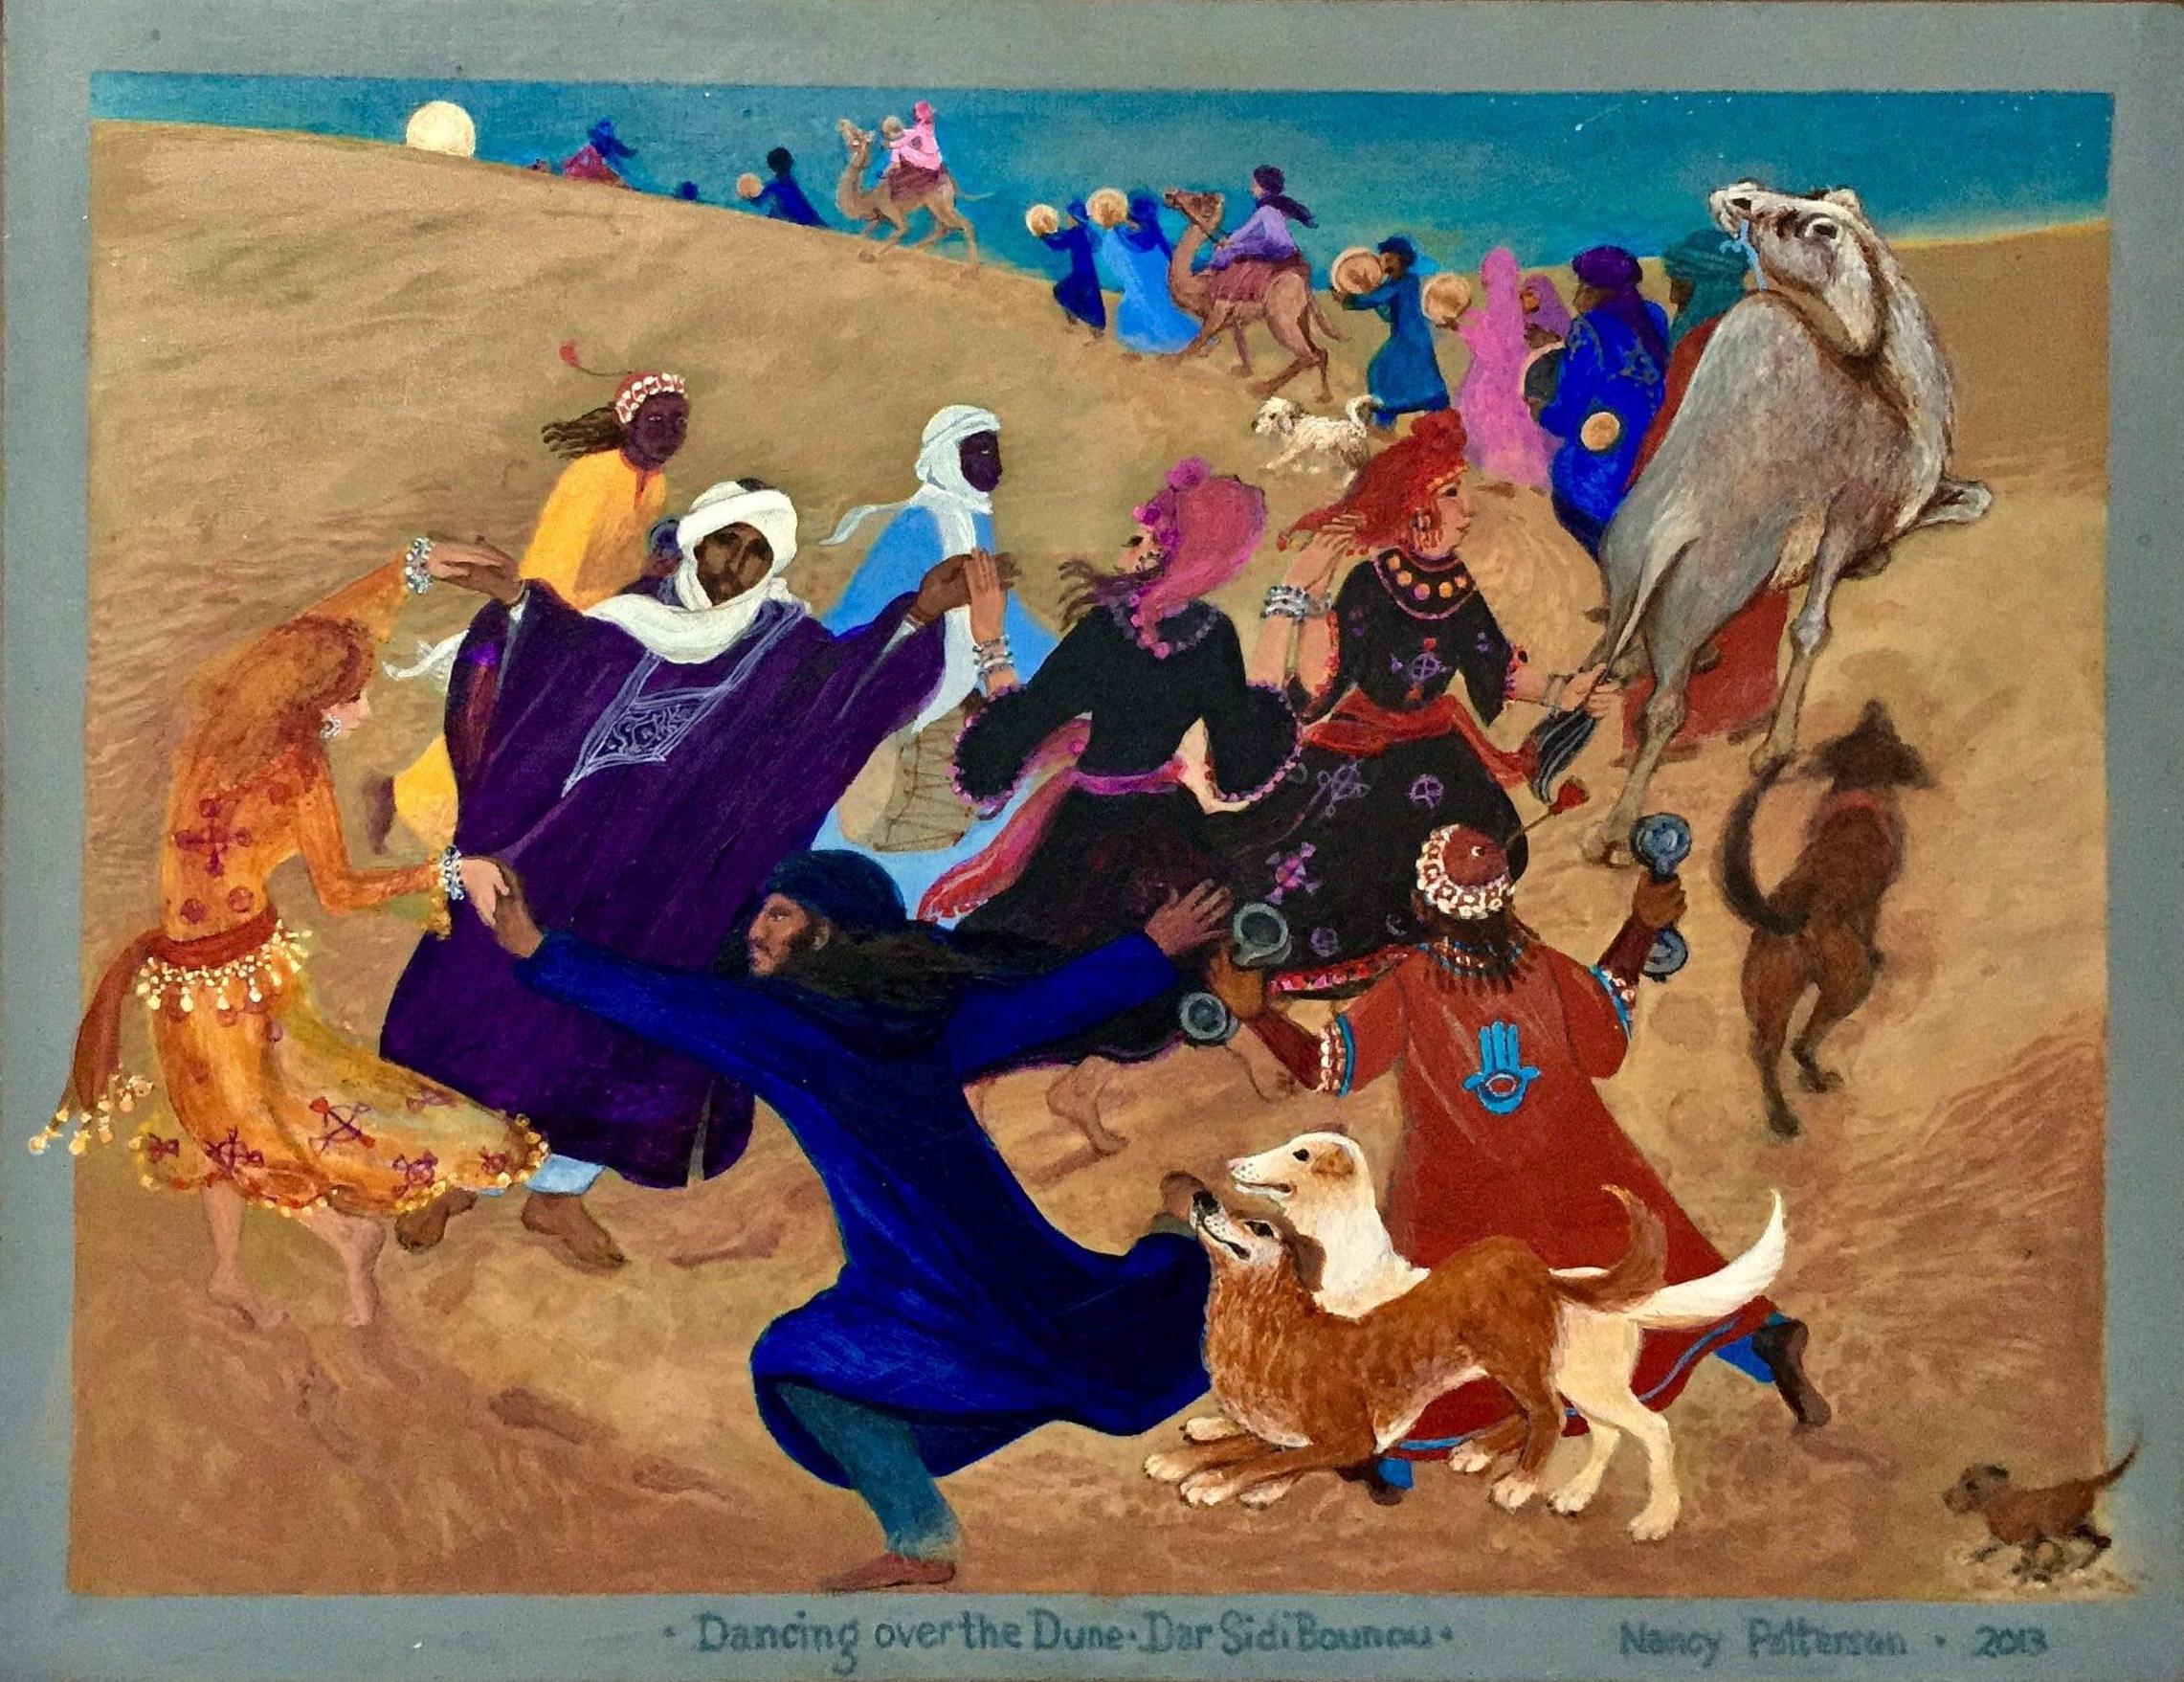 Peinture d'art populaire du Maroc, danse, chiens, camels, animaux, dunes, lune - Painting de Nancy Patterson